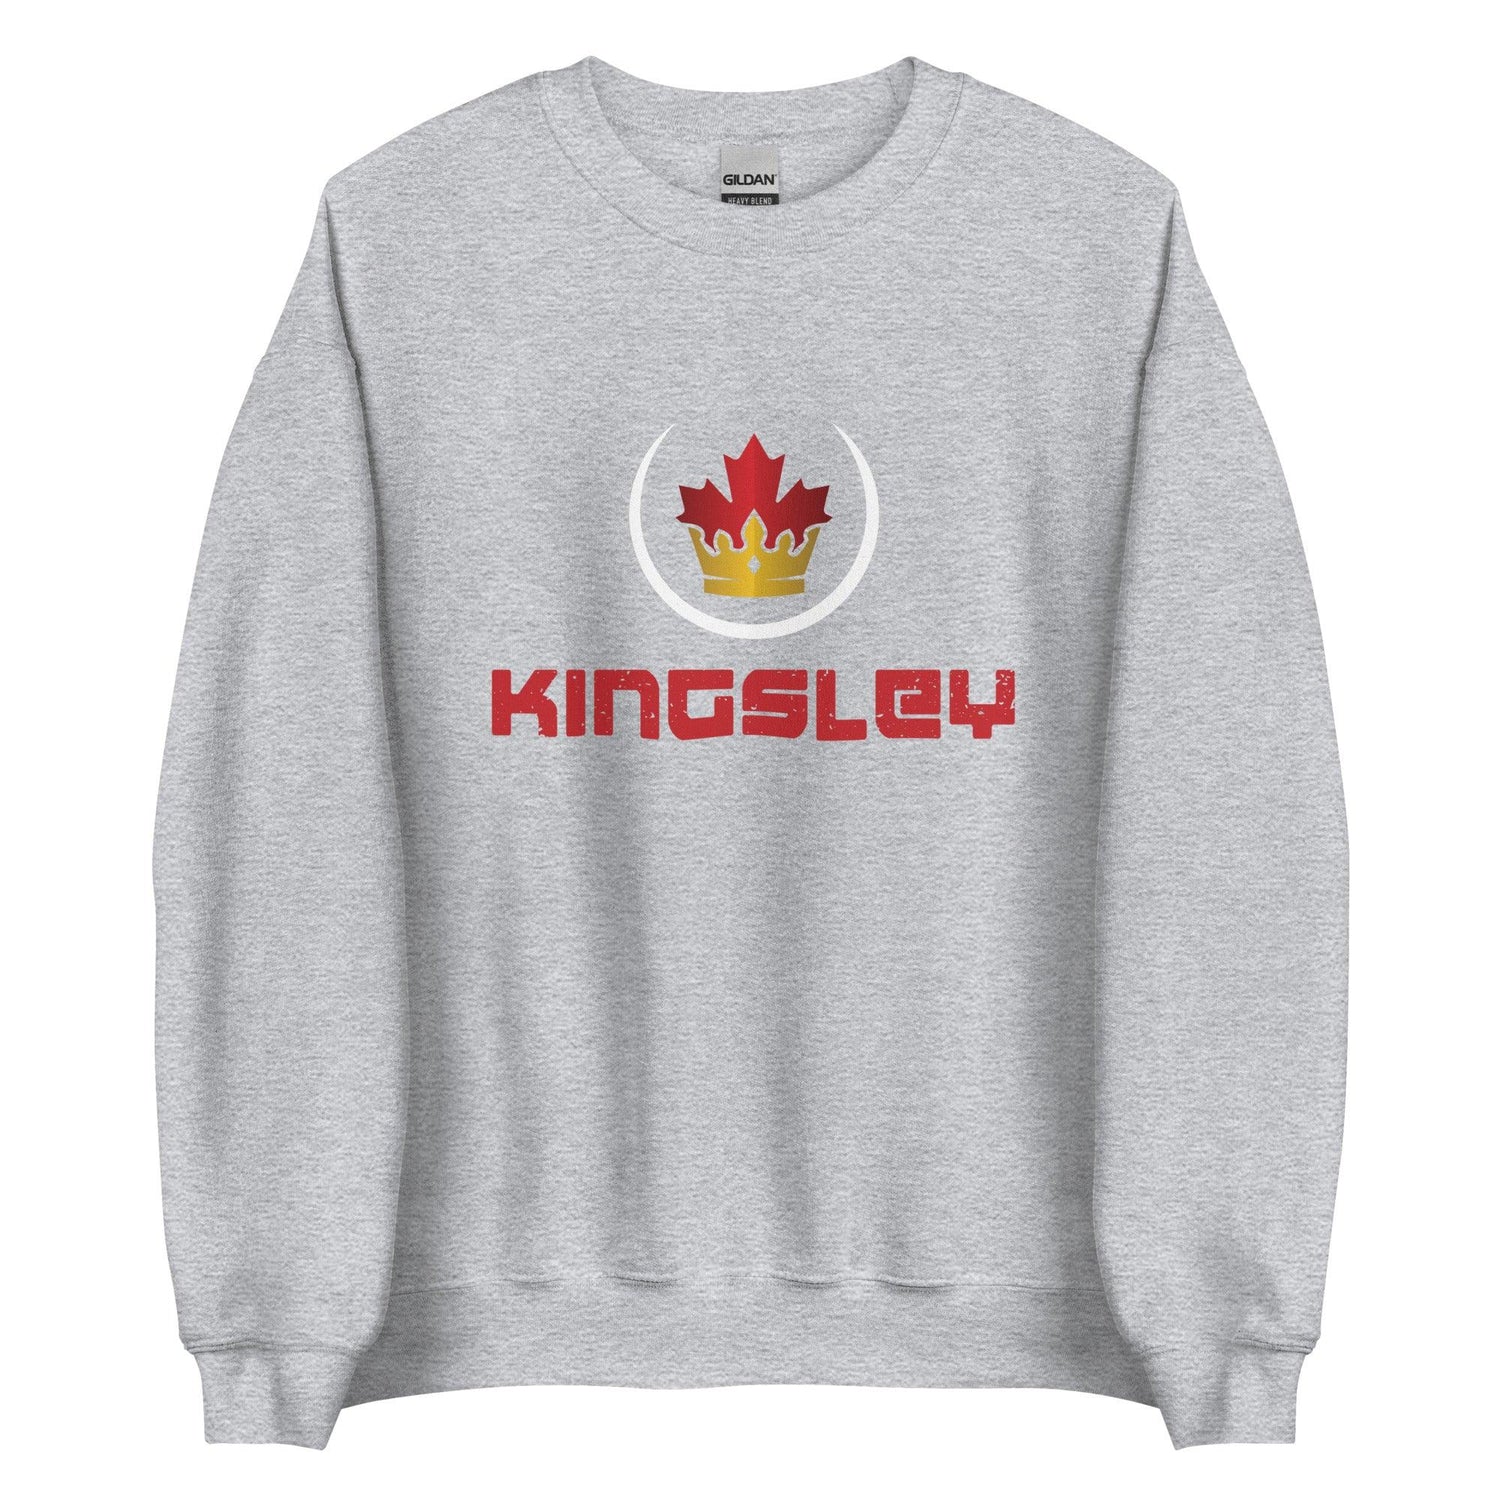 Aaron Kingsley Brown "Royalty" Sweatshirt - Fan Arch